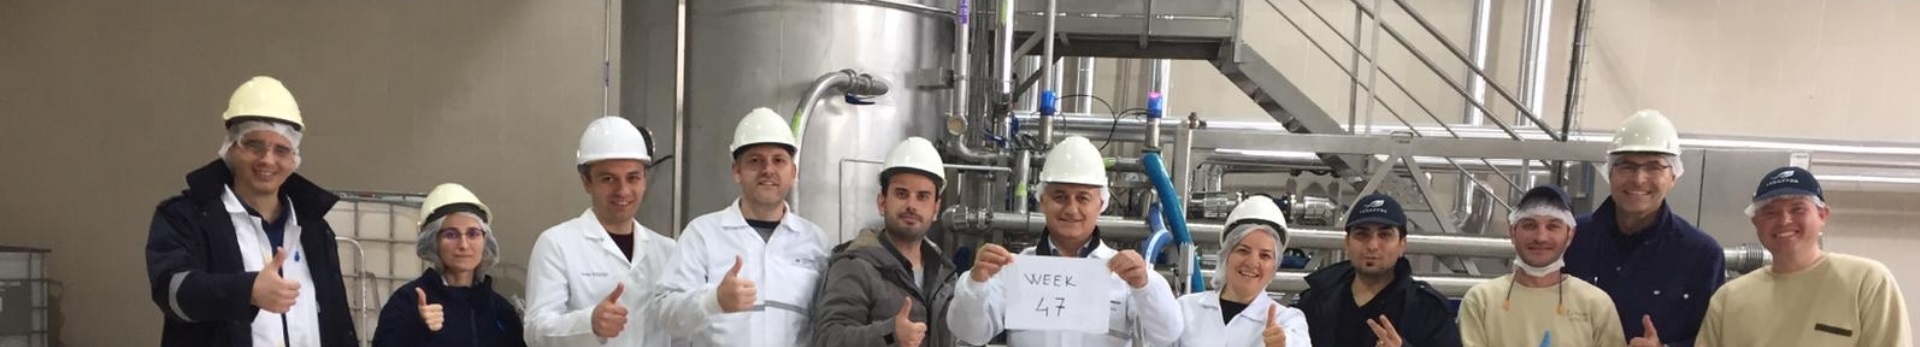 Equipe de production posant suite aux premiers essais en production de leur nouveau fermenteur 6000L pour la fabrication de levures